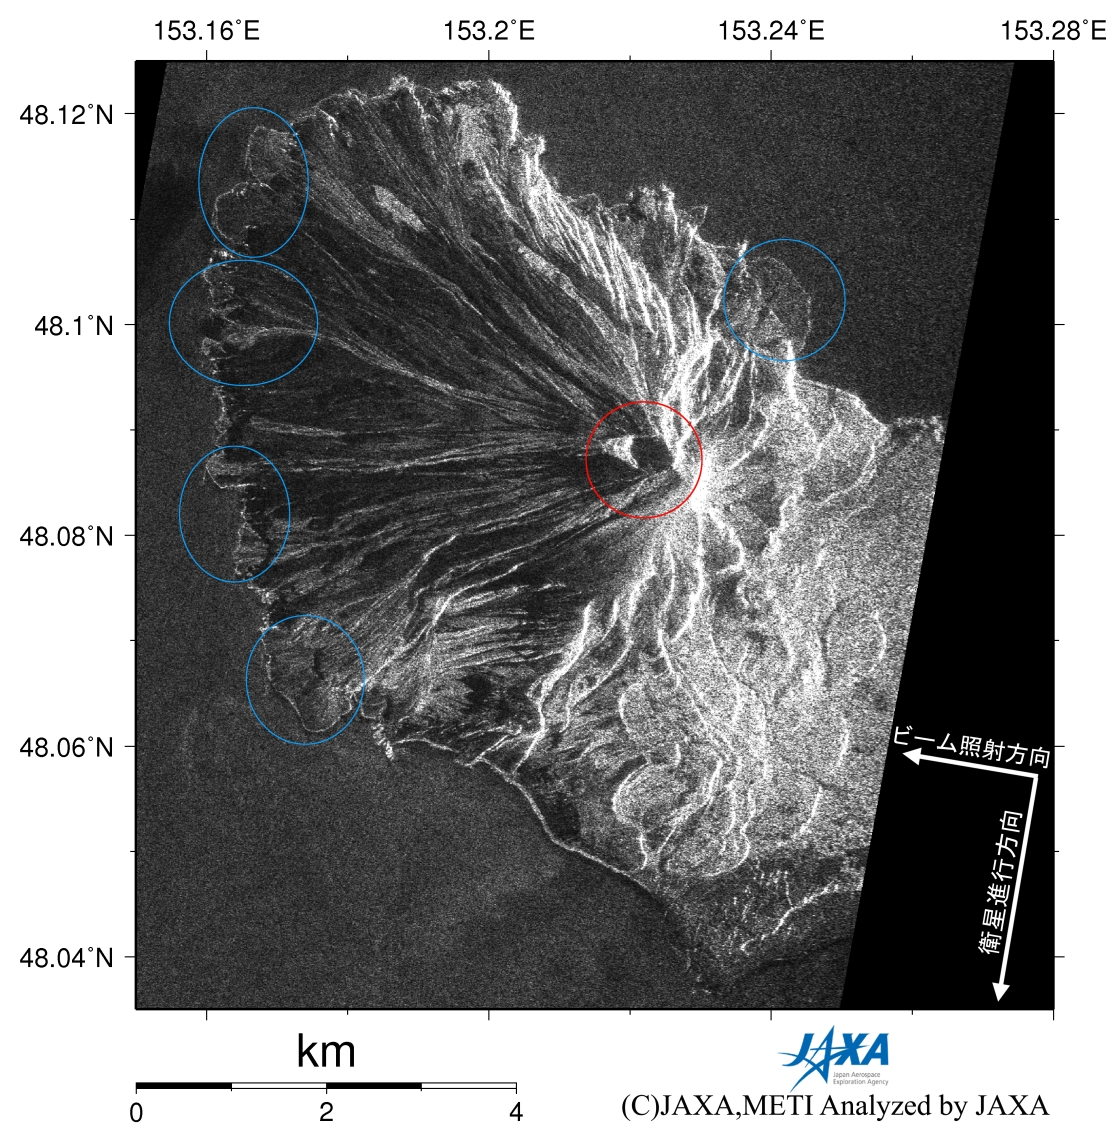 図1: (左)2009年6月19日(噴火後)のPALSAR強度画像。